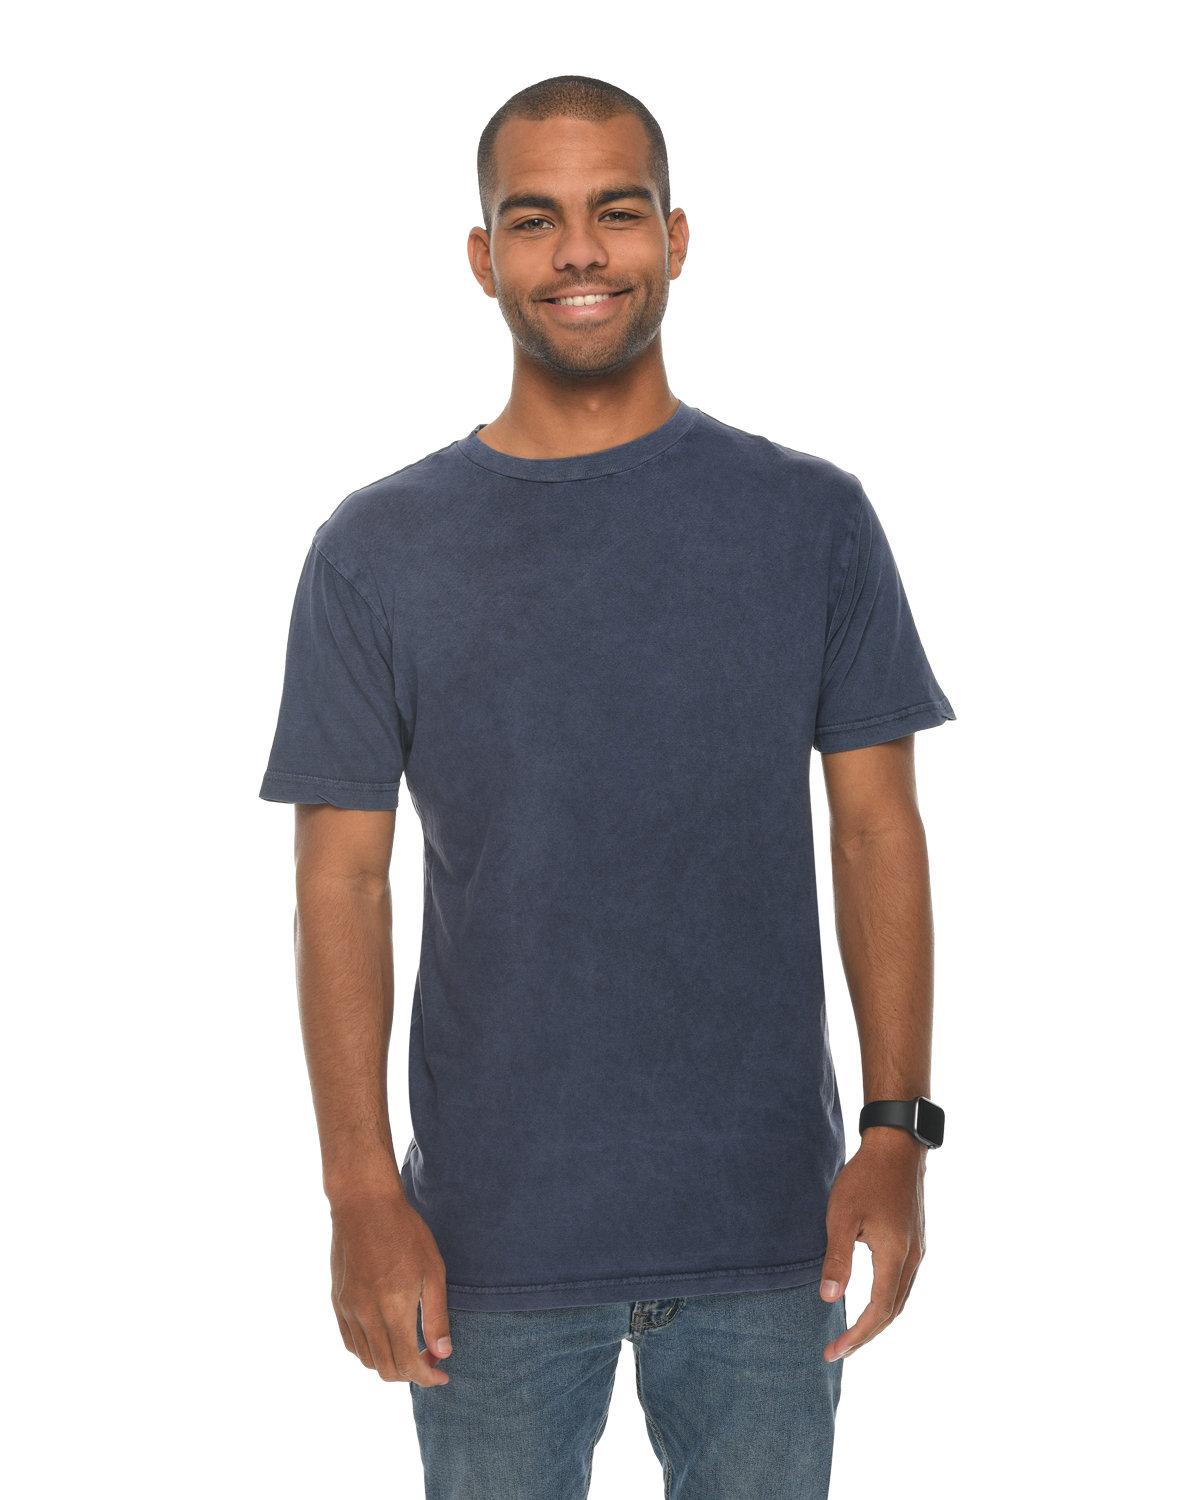 Unisex Vintage T-Shirt-Lane Seven